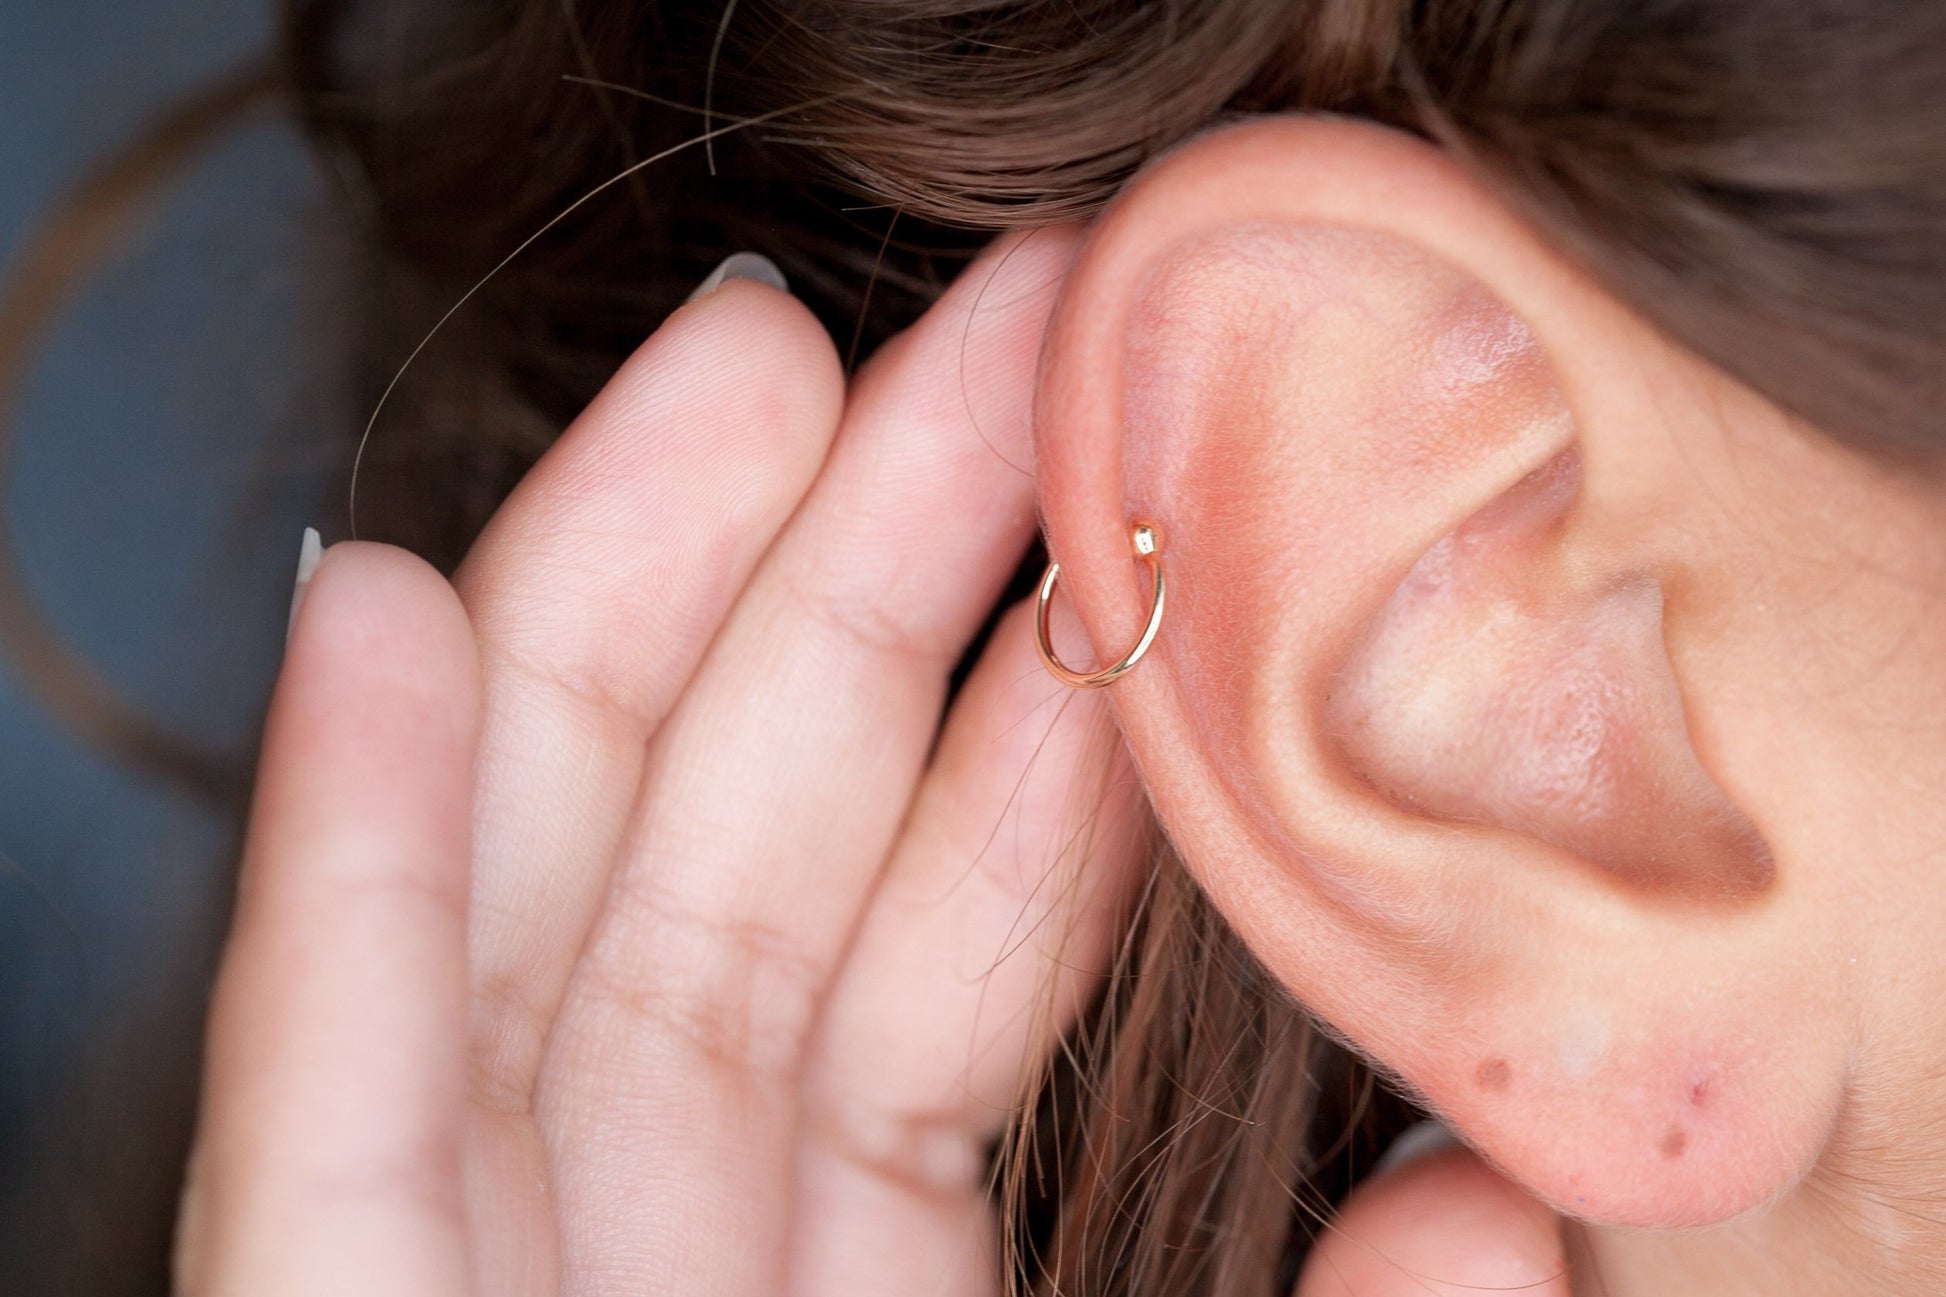 Bague d'oreille Ear cuff plaqué or, faux piercing